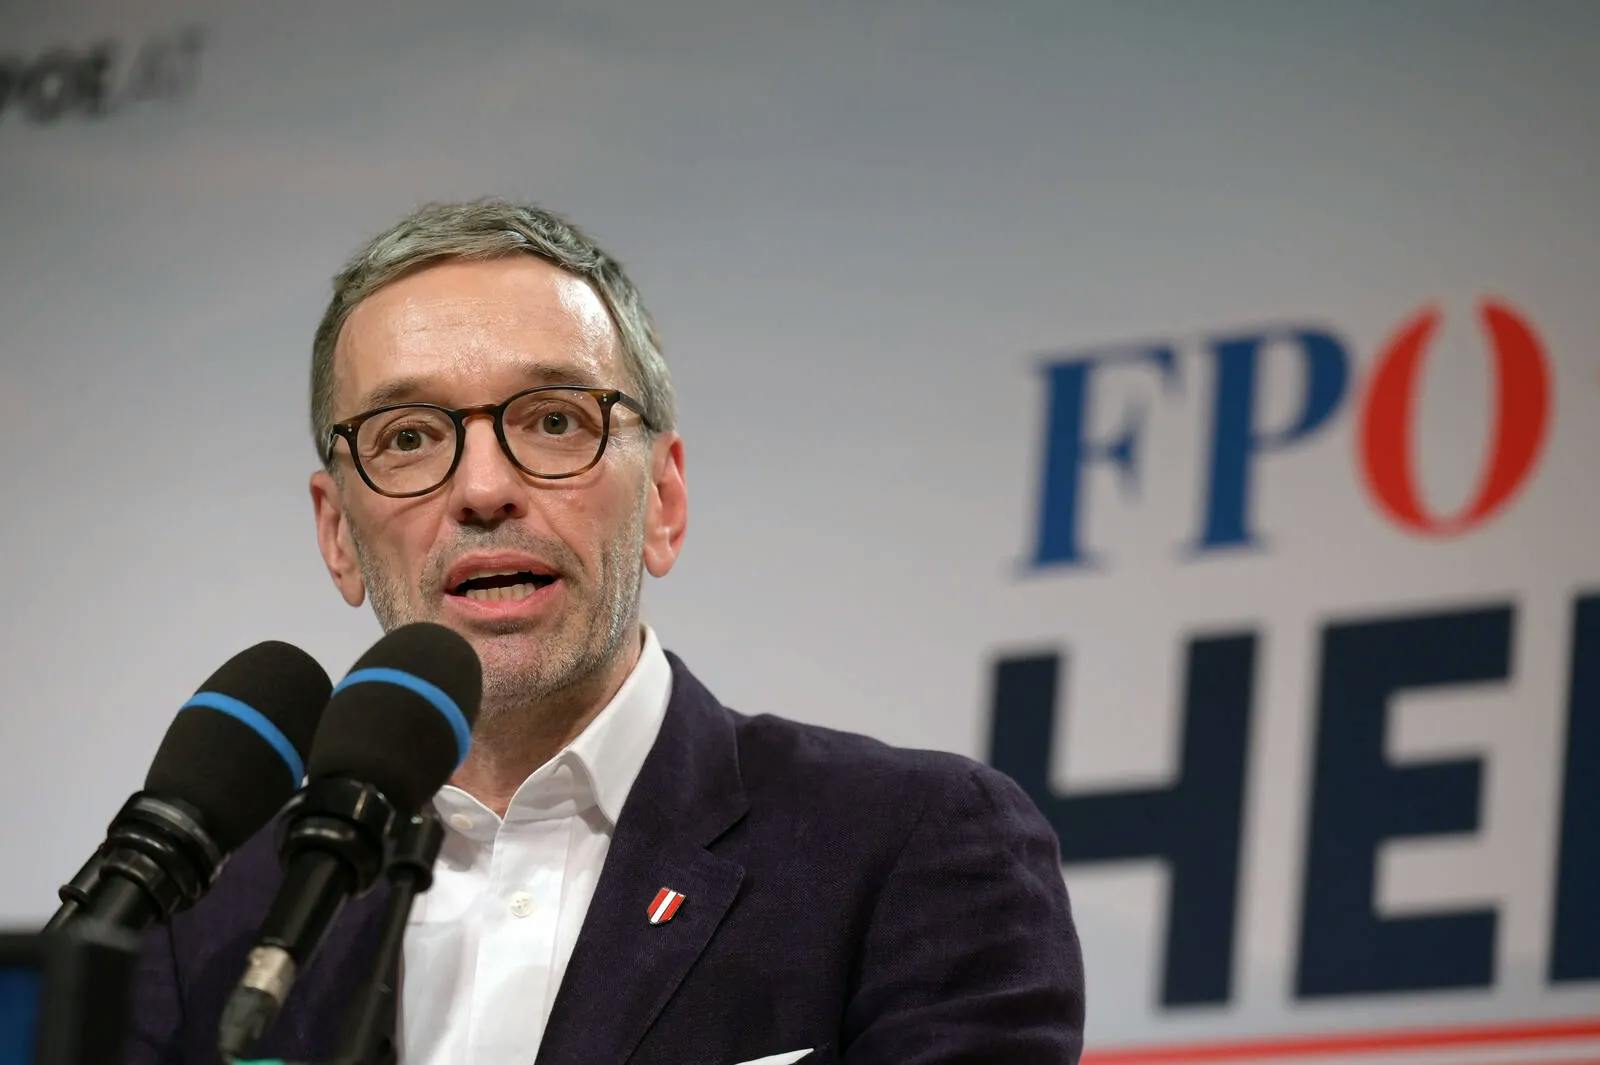 Umfrage: FPÖ bleibt stabil auf Platz 1, SPÖ und ÖVP rutschen ab